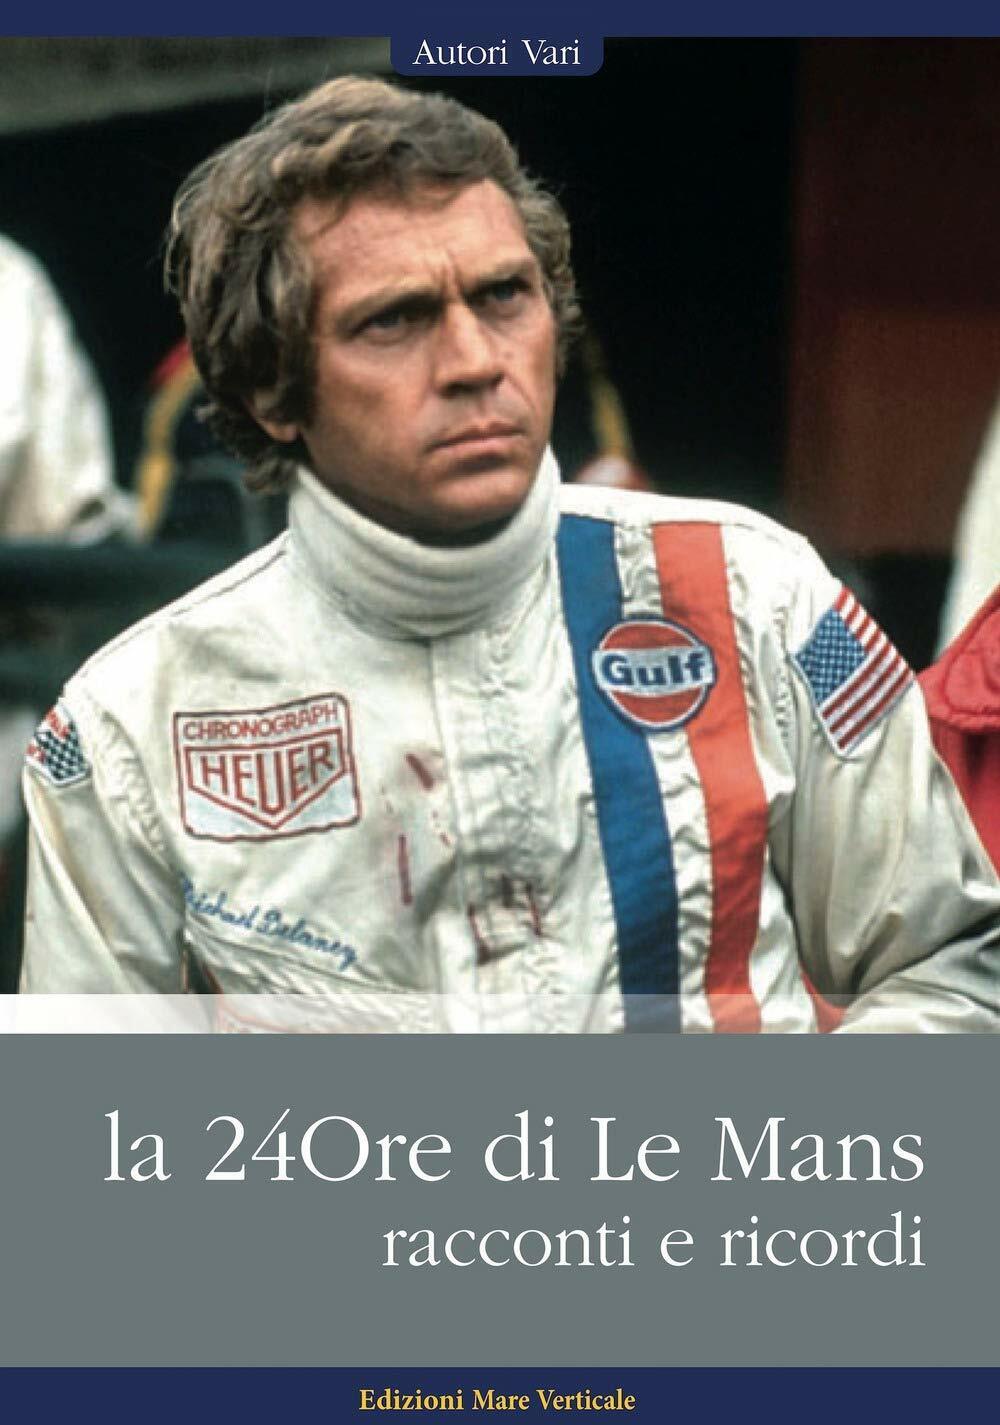 La 24ore di Le Mans. Racconti e ricordi - AA.VV. - Mare Verticale, 2020 libro usato